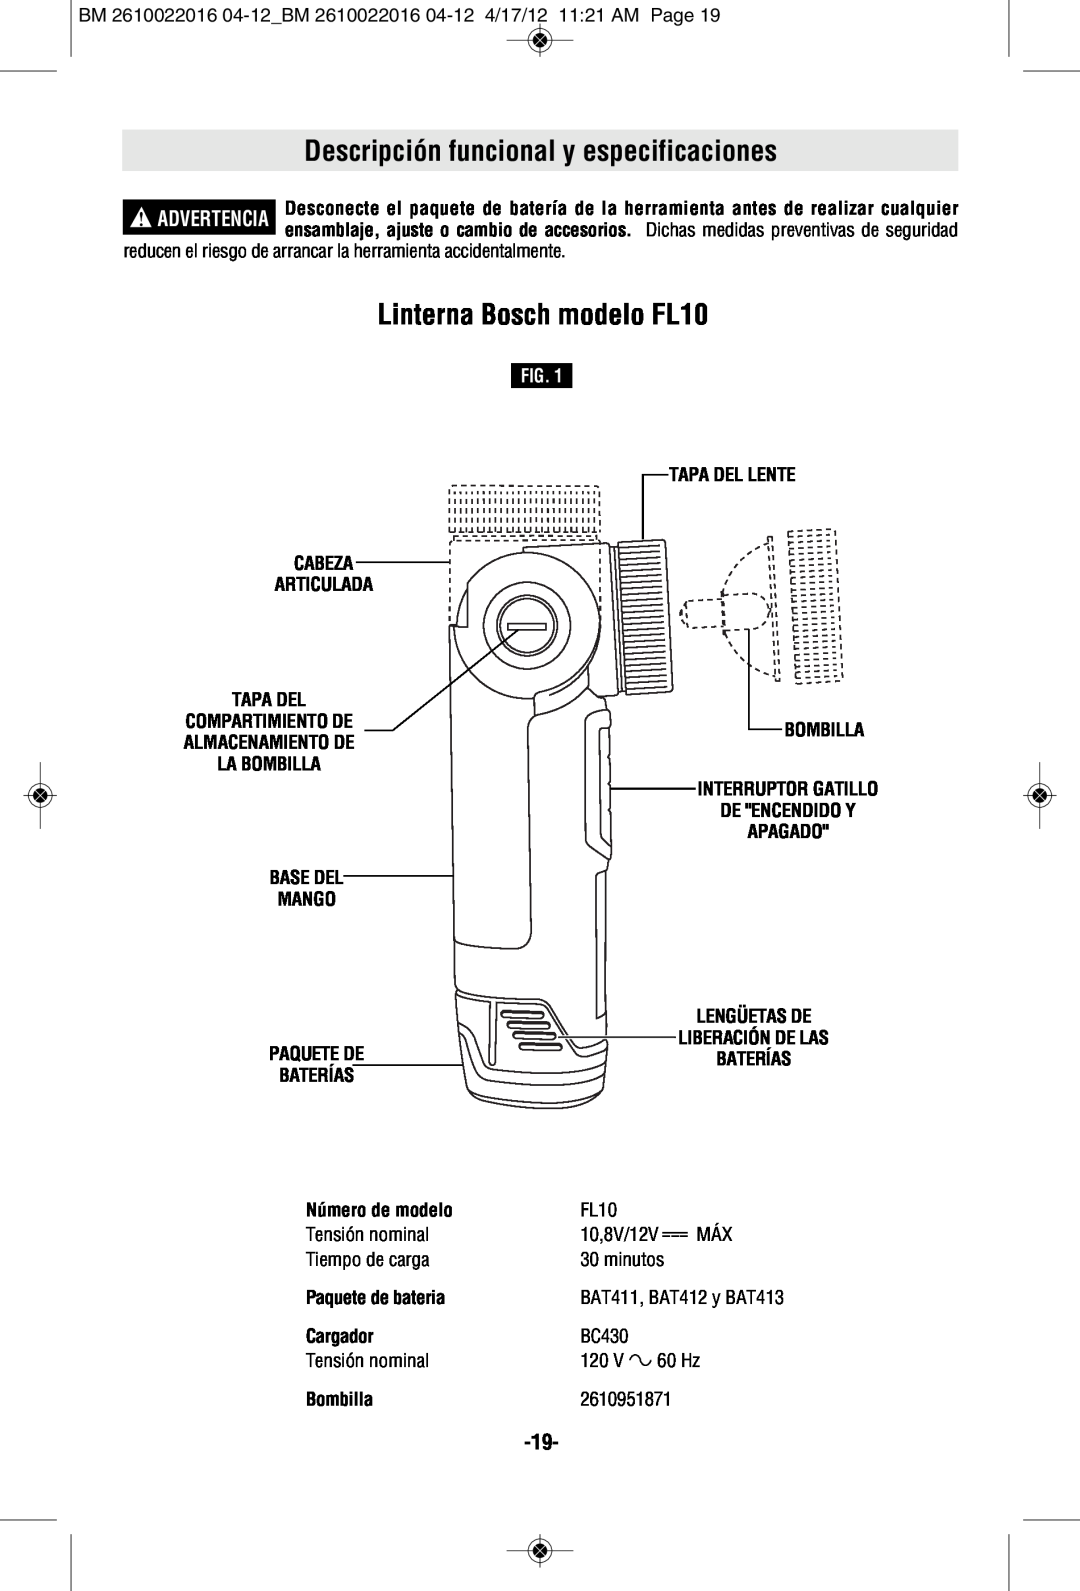 Bosch Power Tools CLPK33-120 Descripción funcional y especificaciones, Linterna Bosch modelo FL10, Fig, Número de modelo 